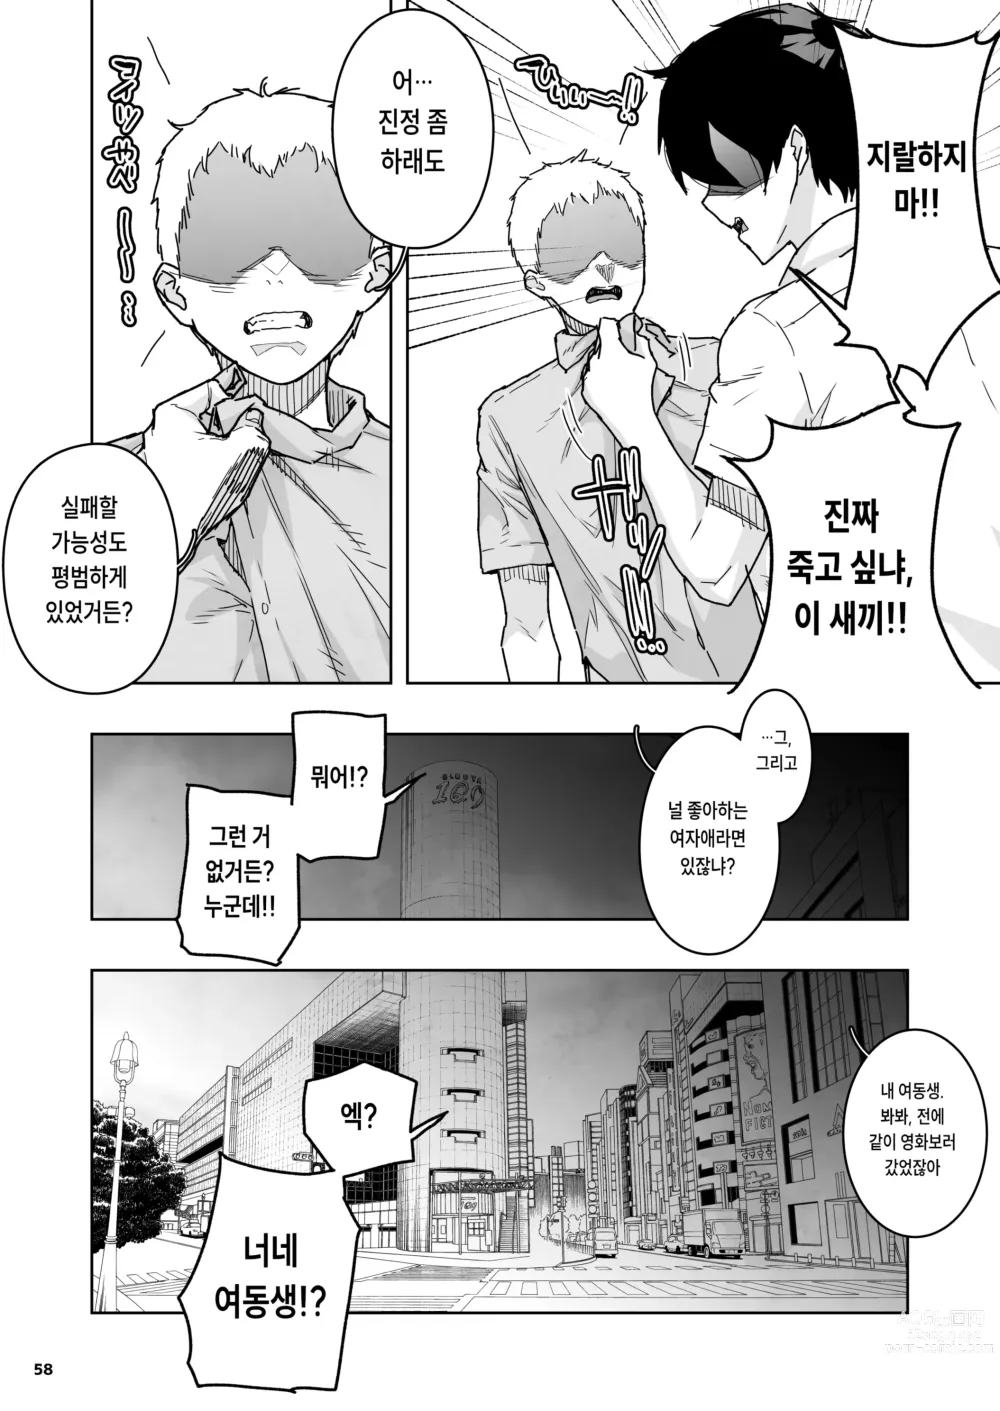 Page 58 of doujinshi 친구의 마지막